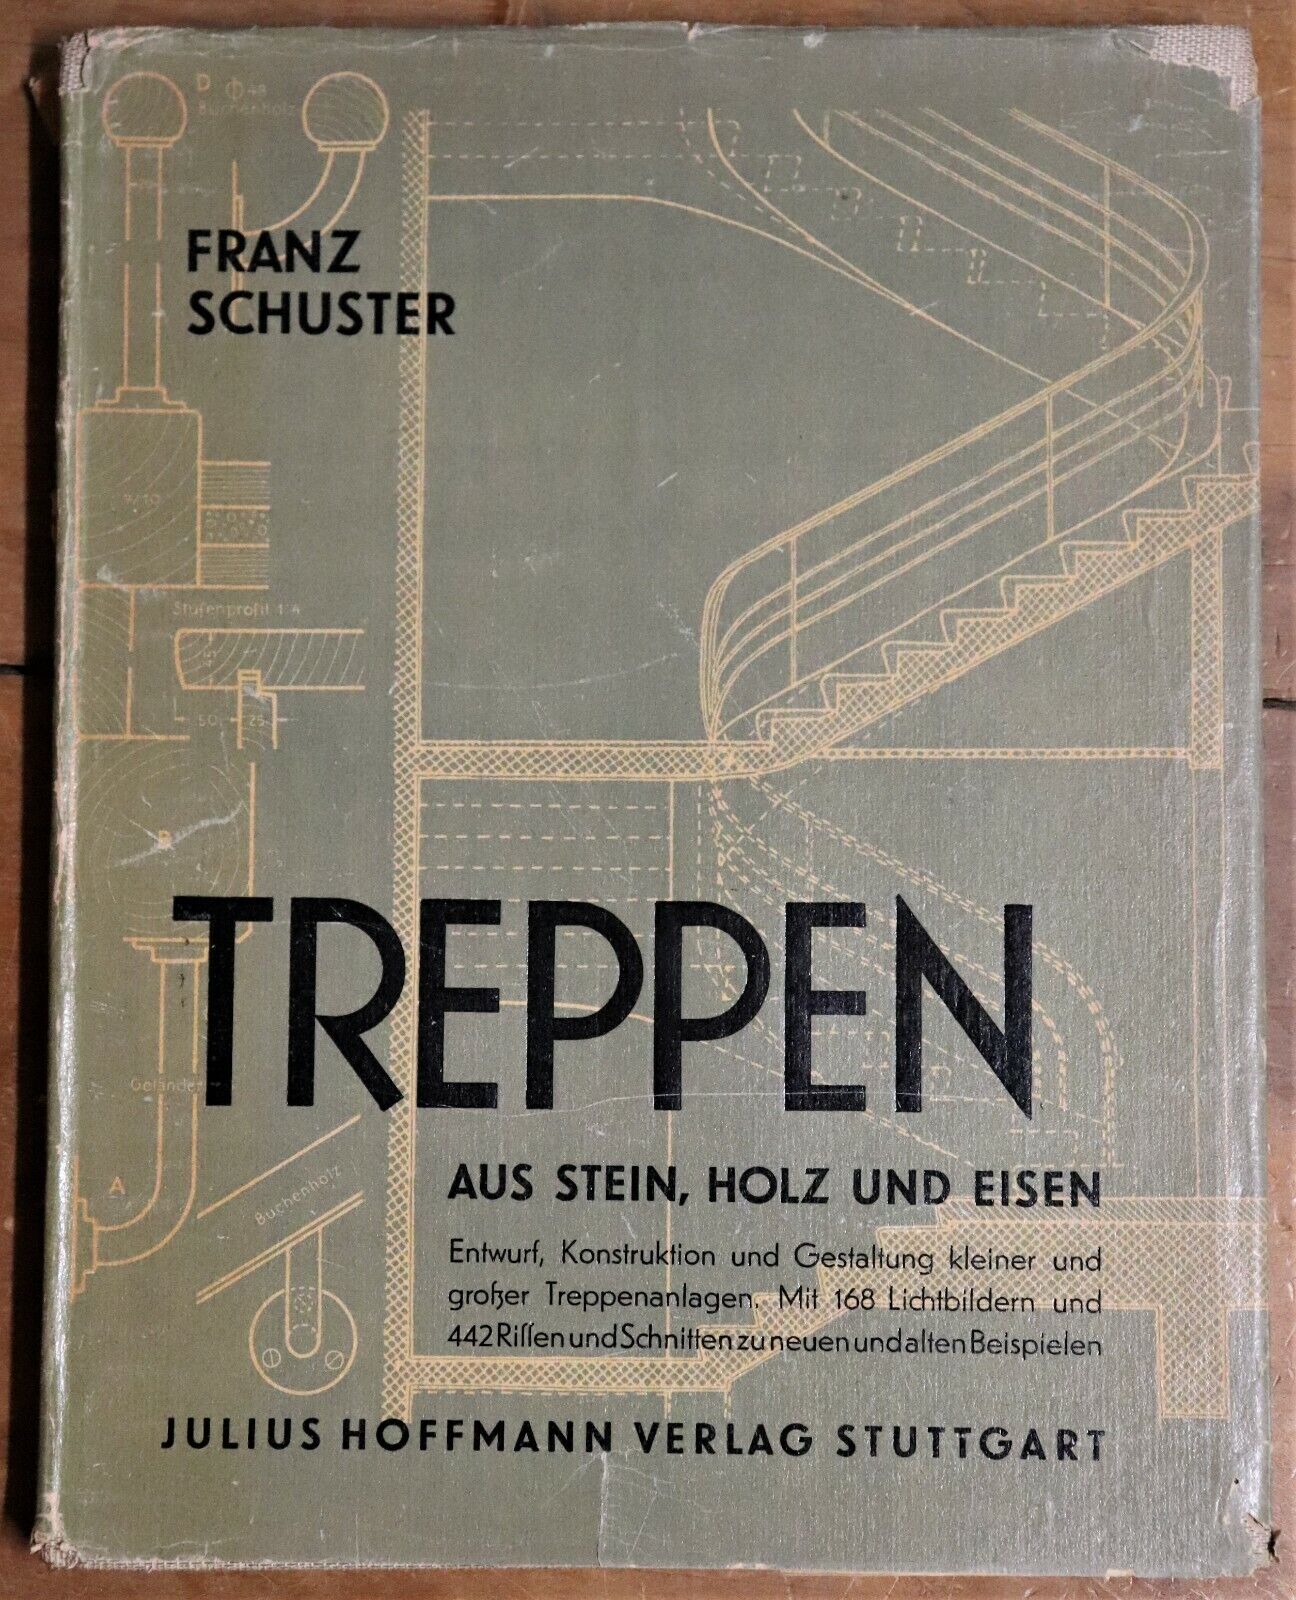 Treppen Aus Stein Holz Und Eisen - 1949 - Antique German Architecture Book